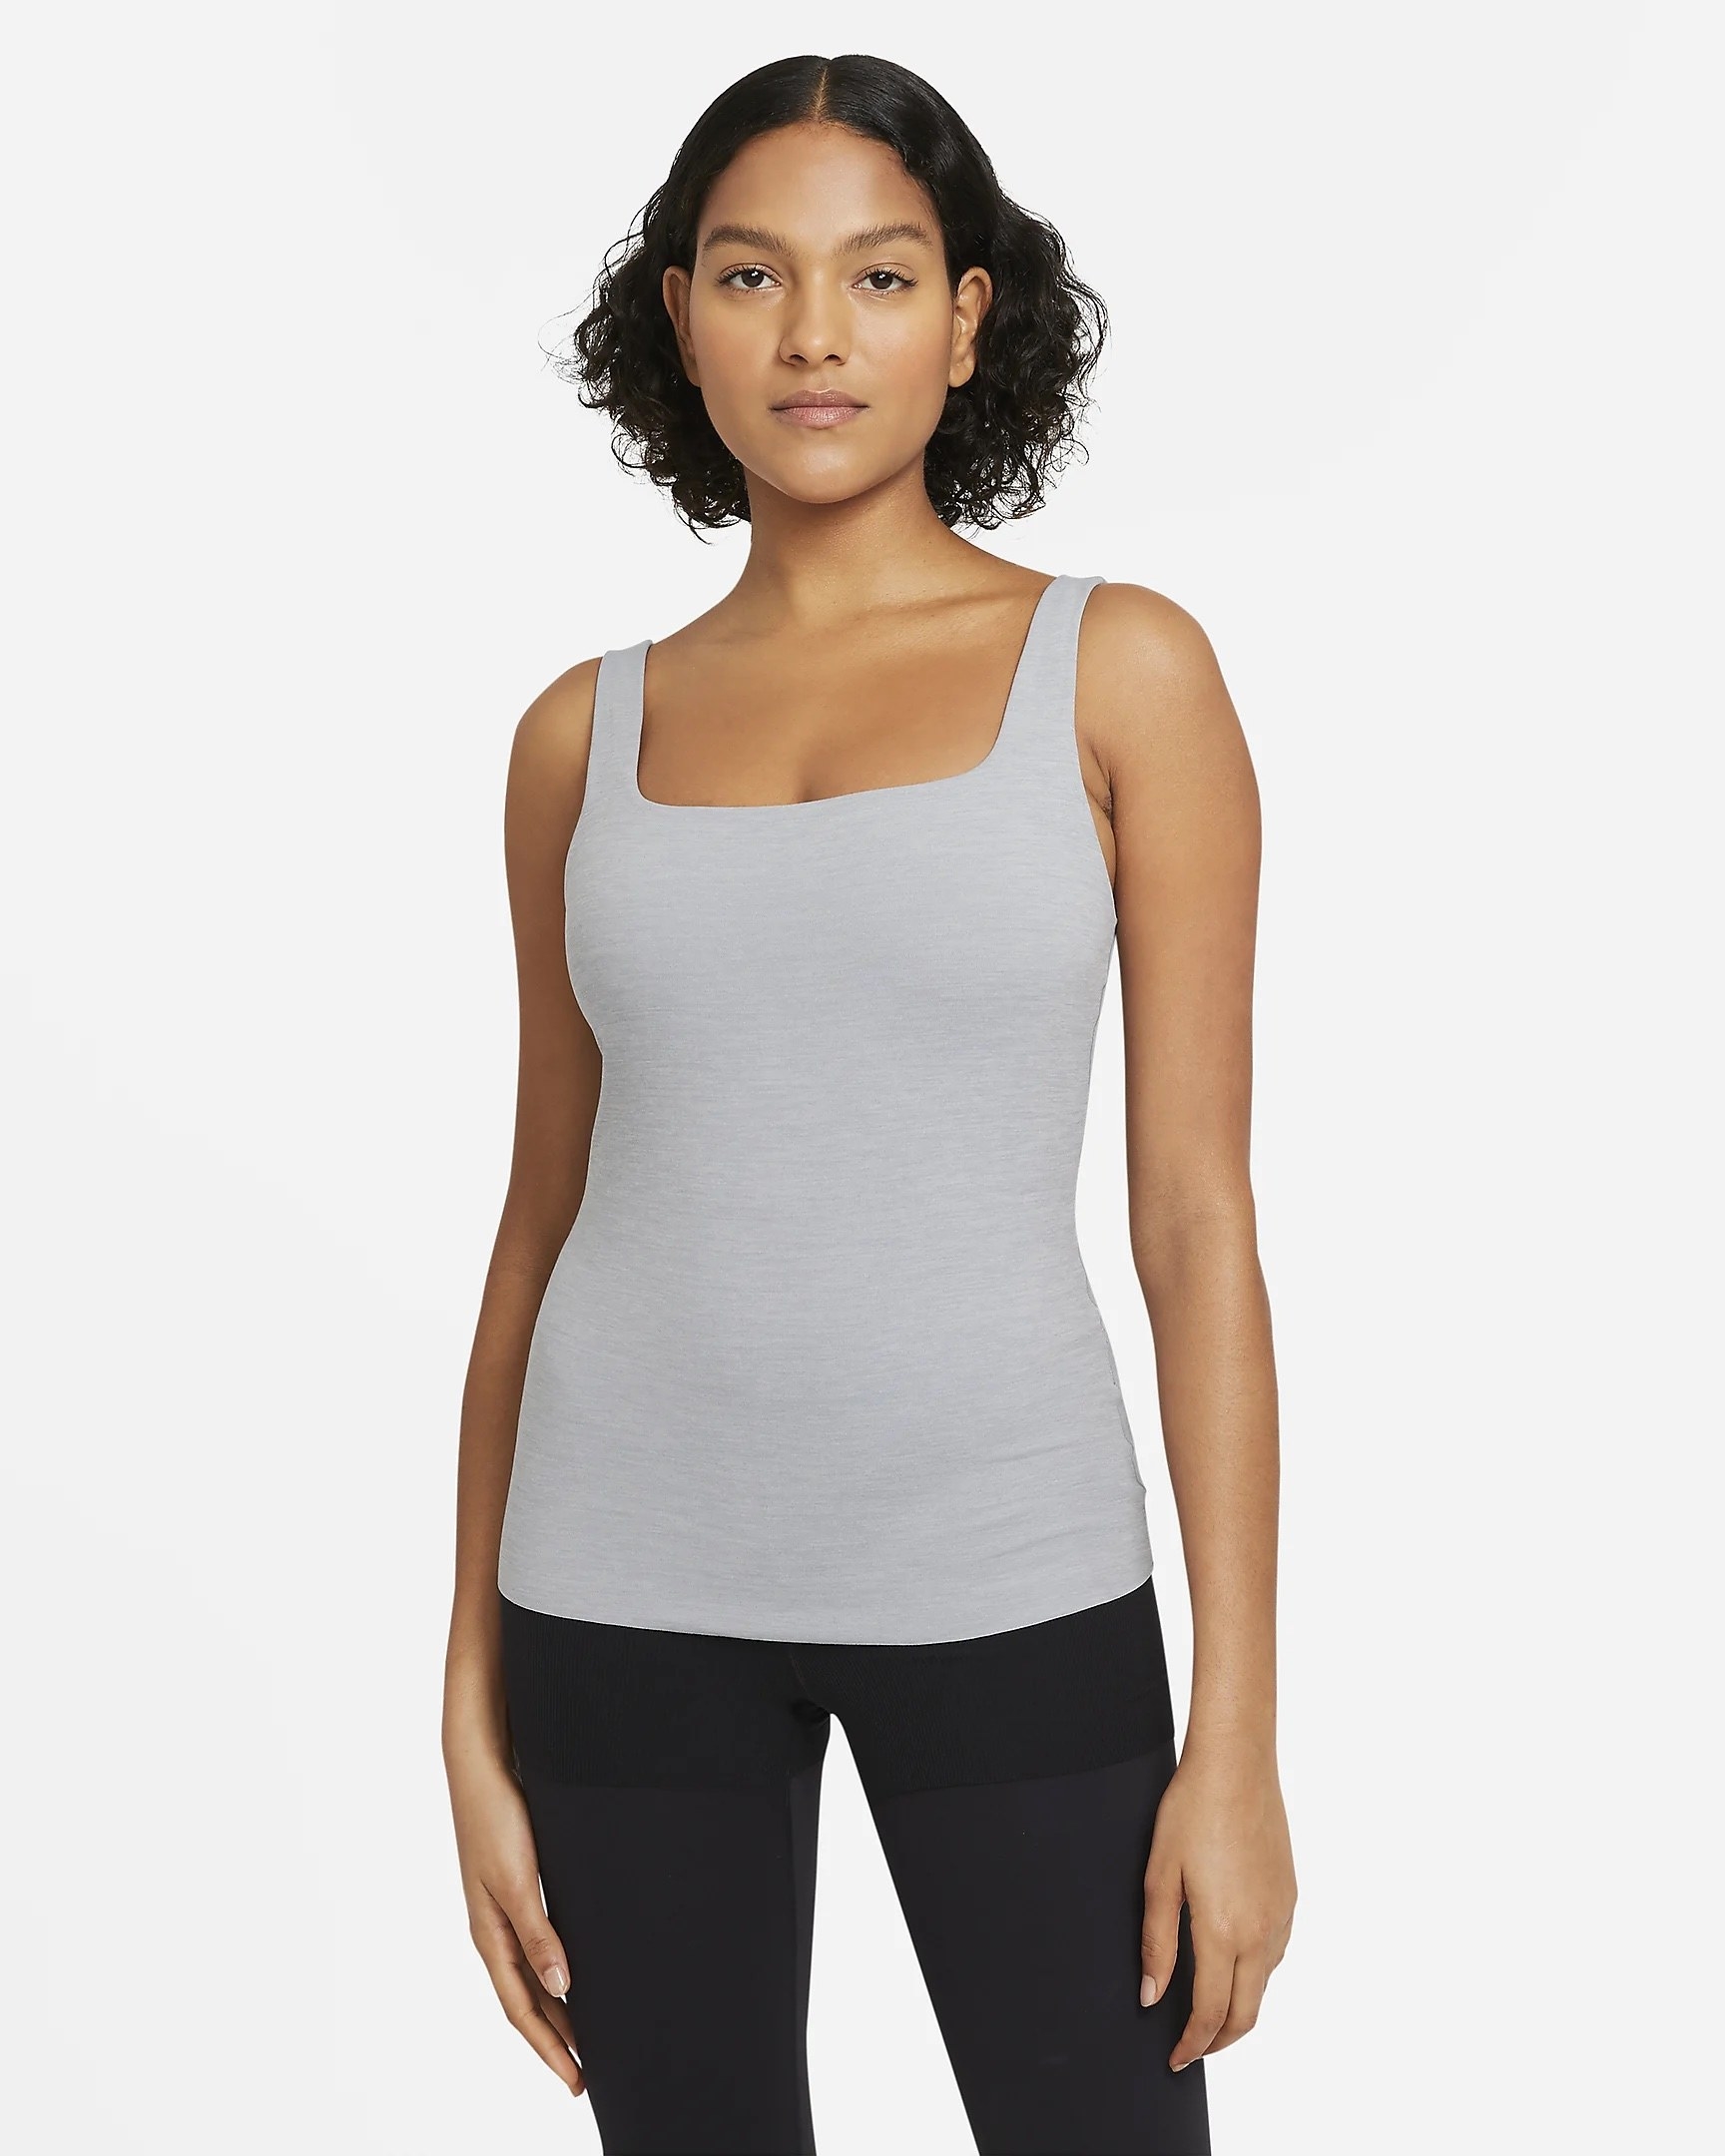 model in grey square-neck yoga top